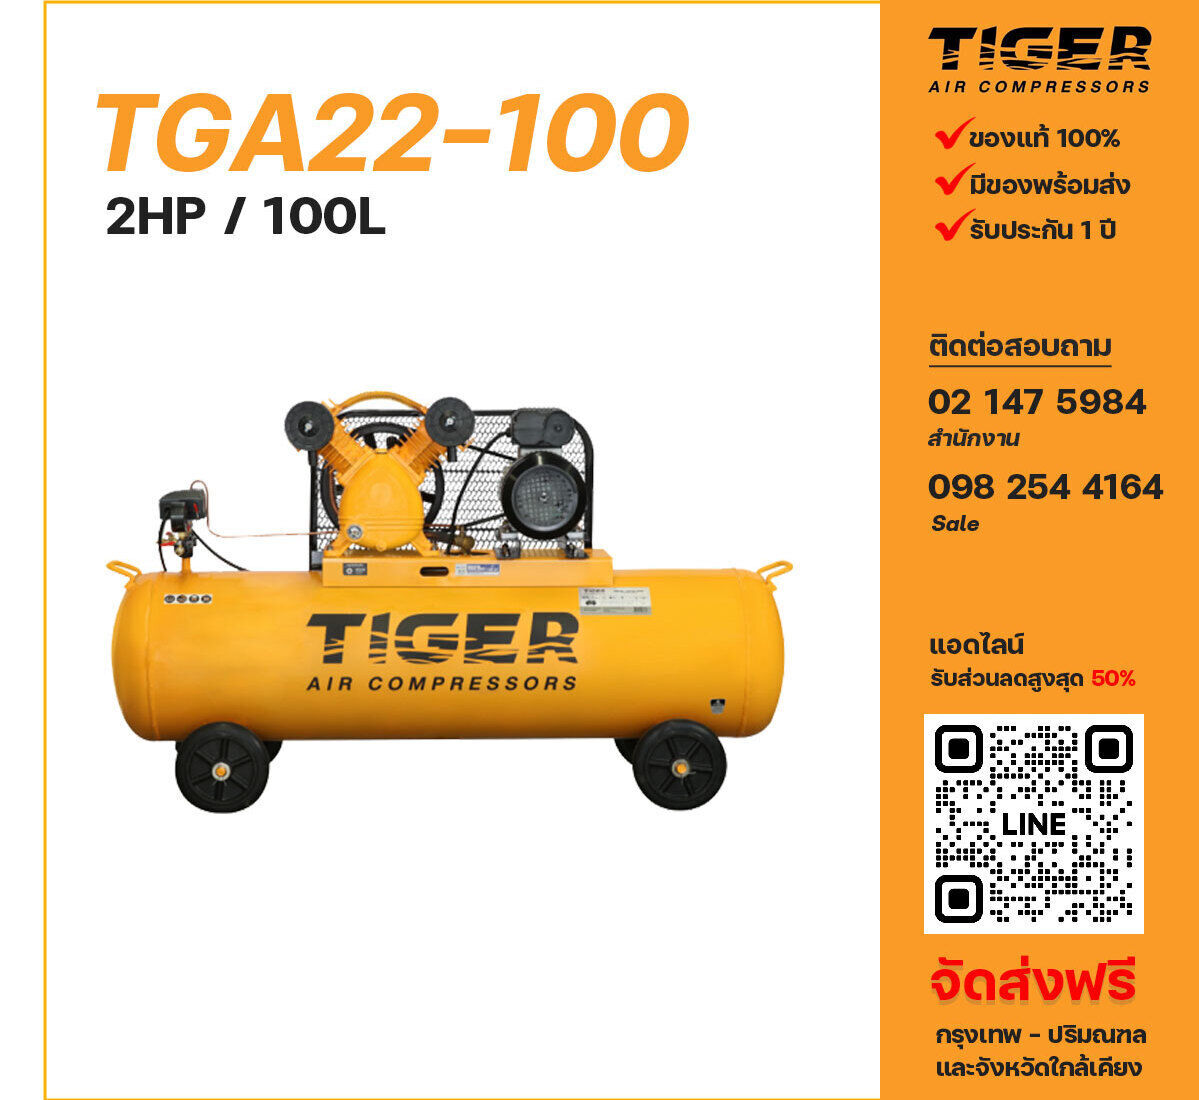 ปั๊มลมไทเกอร์ TIGER TGA22-100 220V ปั๊มลมลูกสูบ ขนาด 2 สูบ 2 แรงม้า 100 ลิตร TIGER พร้อมมอเตอร์ ไฟ 220V ส่งฟรี กรุงเทพฯ-ปริมณฑล รับประกัน 1 ปี